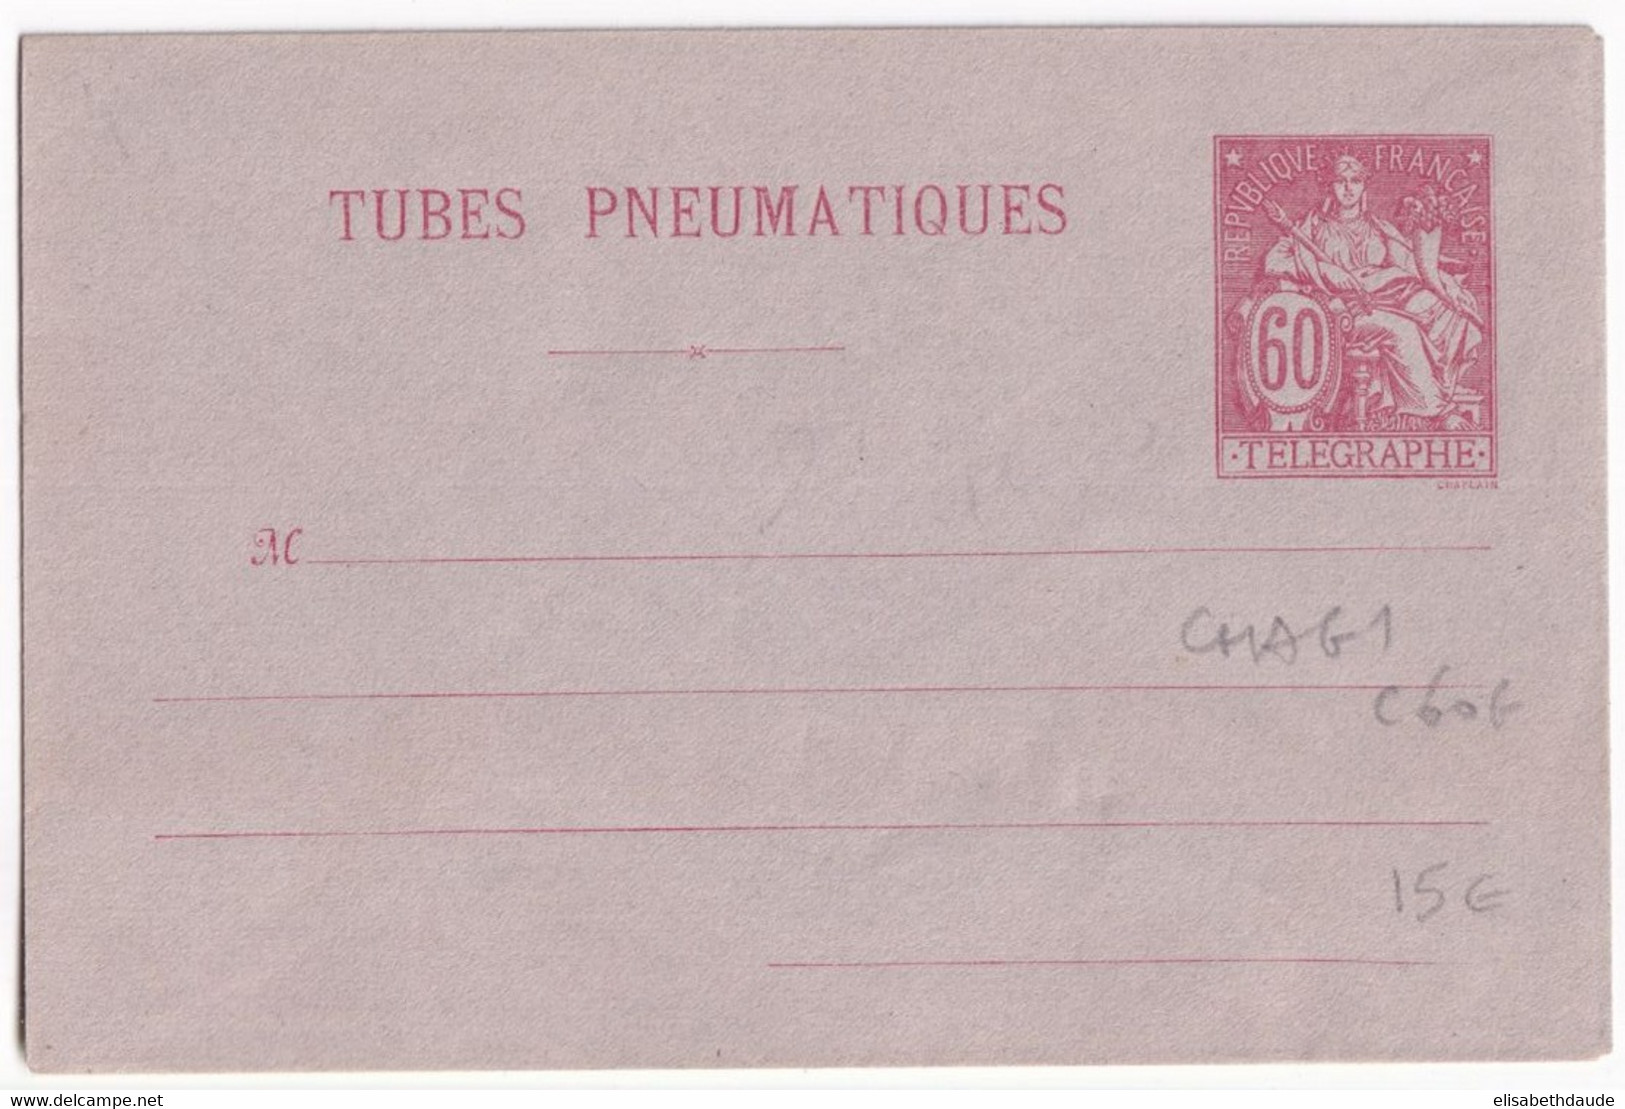 PNEUMATIQUE - 1889 - ENVELOPPE ENTIER POSTAL TYPE CHAPLAIN - STORCH G1 - NEUVE - COTE 2005 = 60 EUR. - Pneumatiques